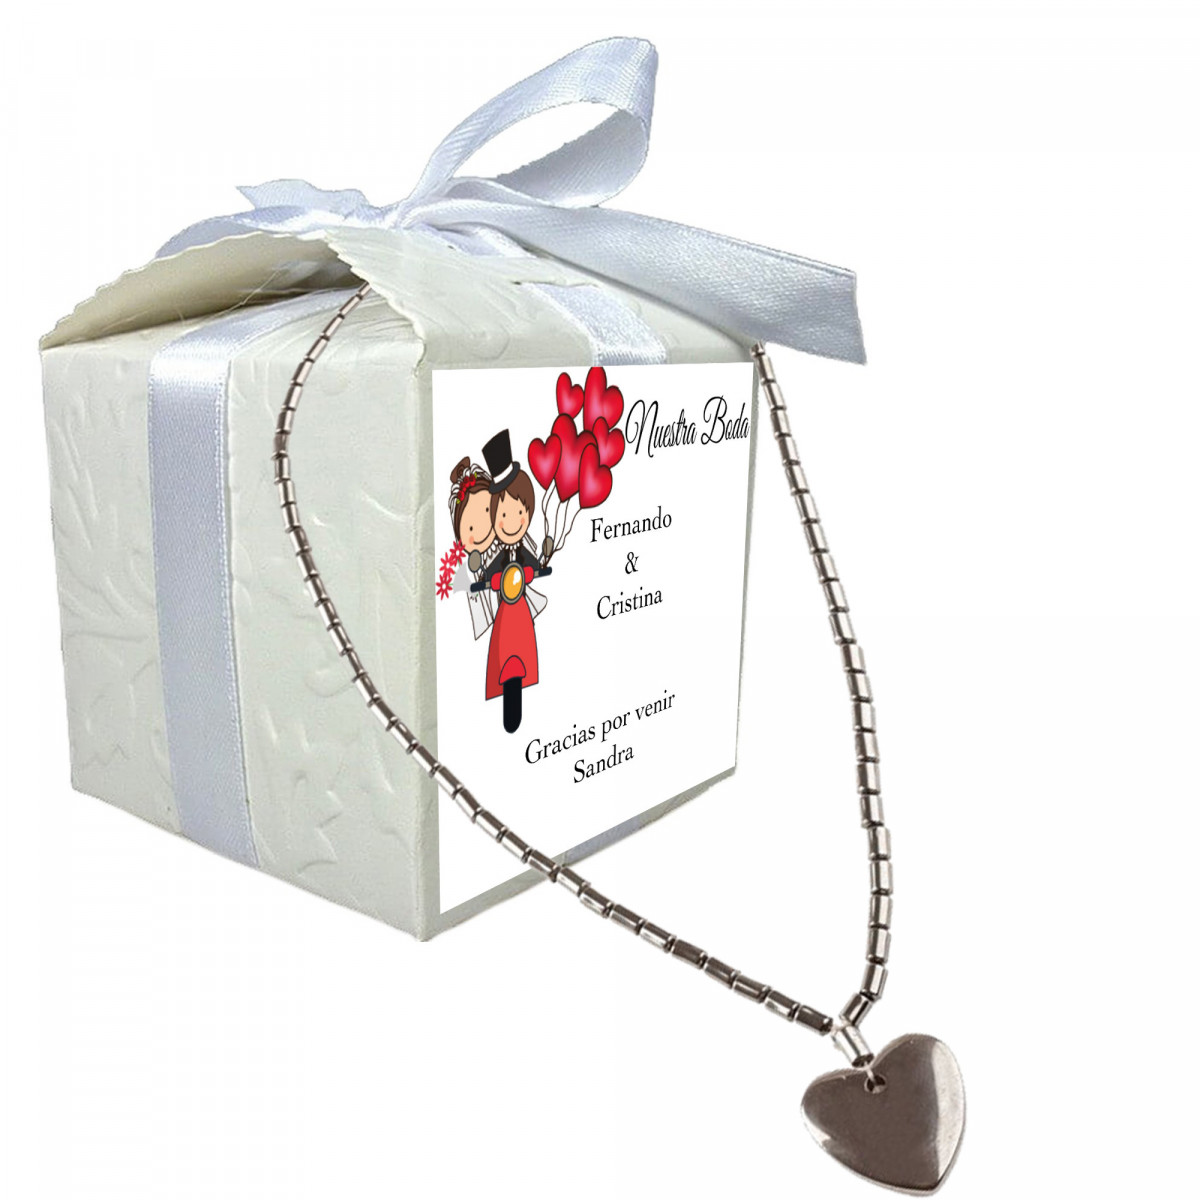 Collar corazón en caja con adhesivo personalizado con nombre de invitado nombre de novios fecha y dedicatoria